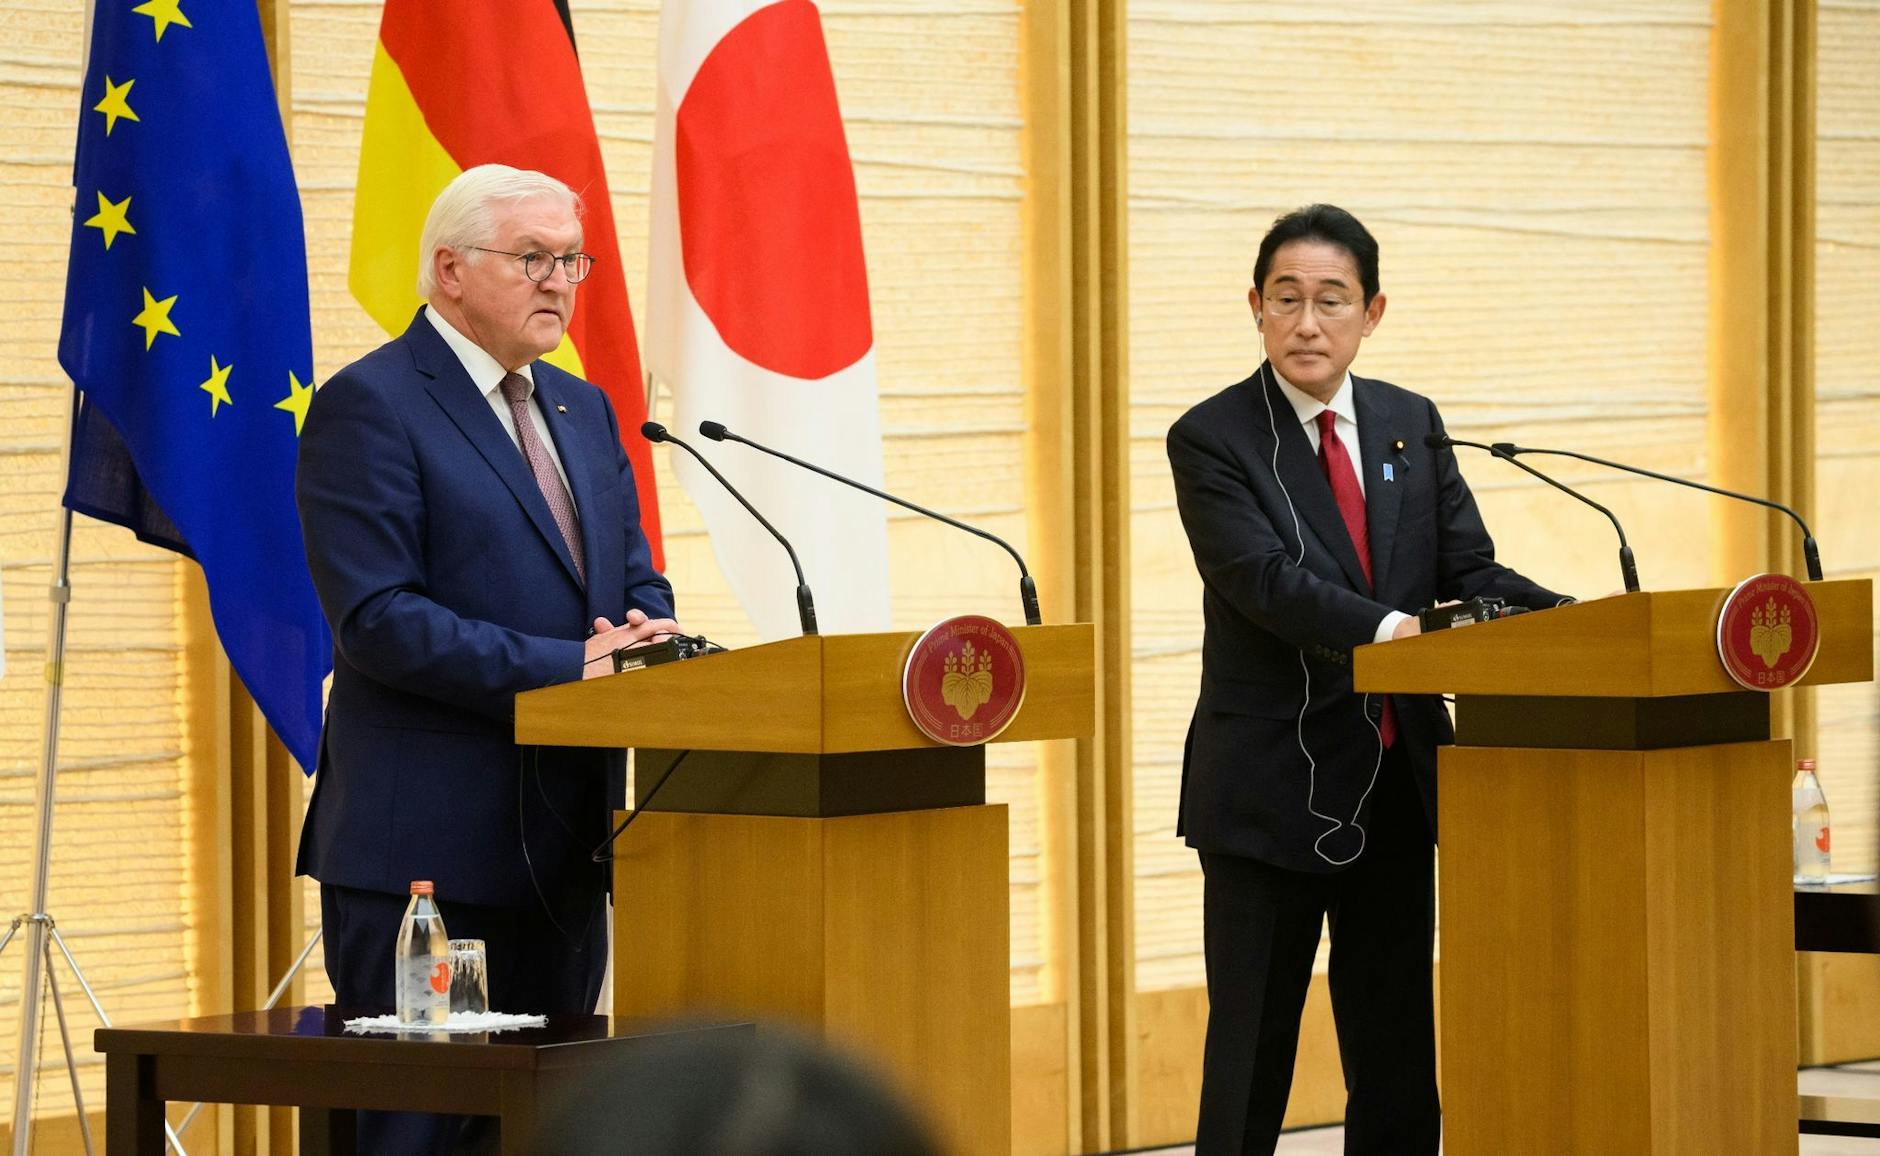 Bundespräsident Frank-Walter Steinmeier und Ministerpräsident Fumio Kishida äußern sich nach ihrem Gespräch bei einer Pressekonferenz.  